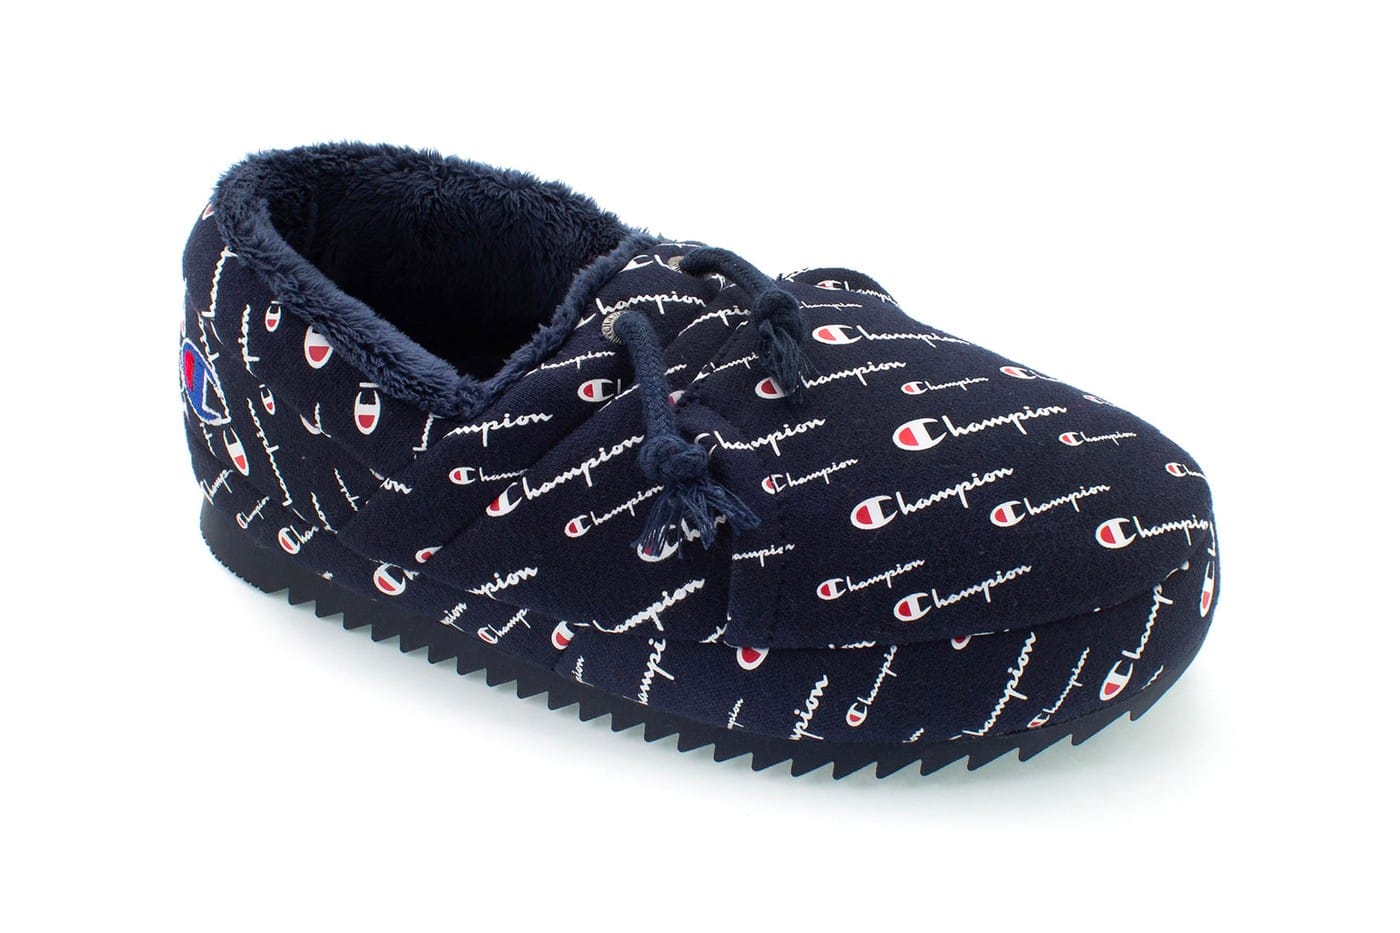 hypebeast shoe slippers